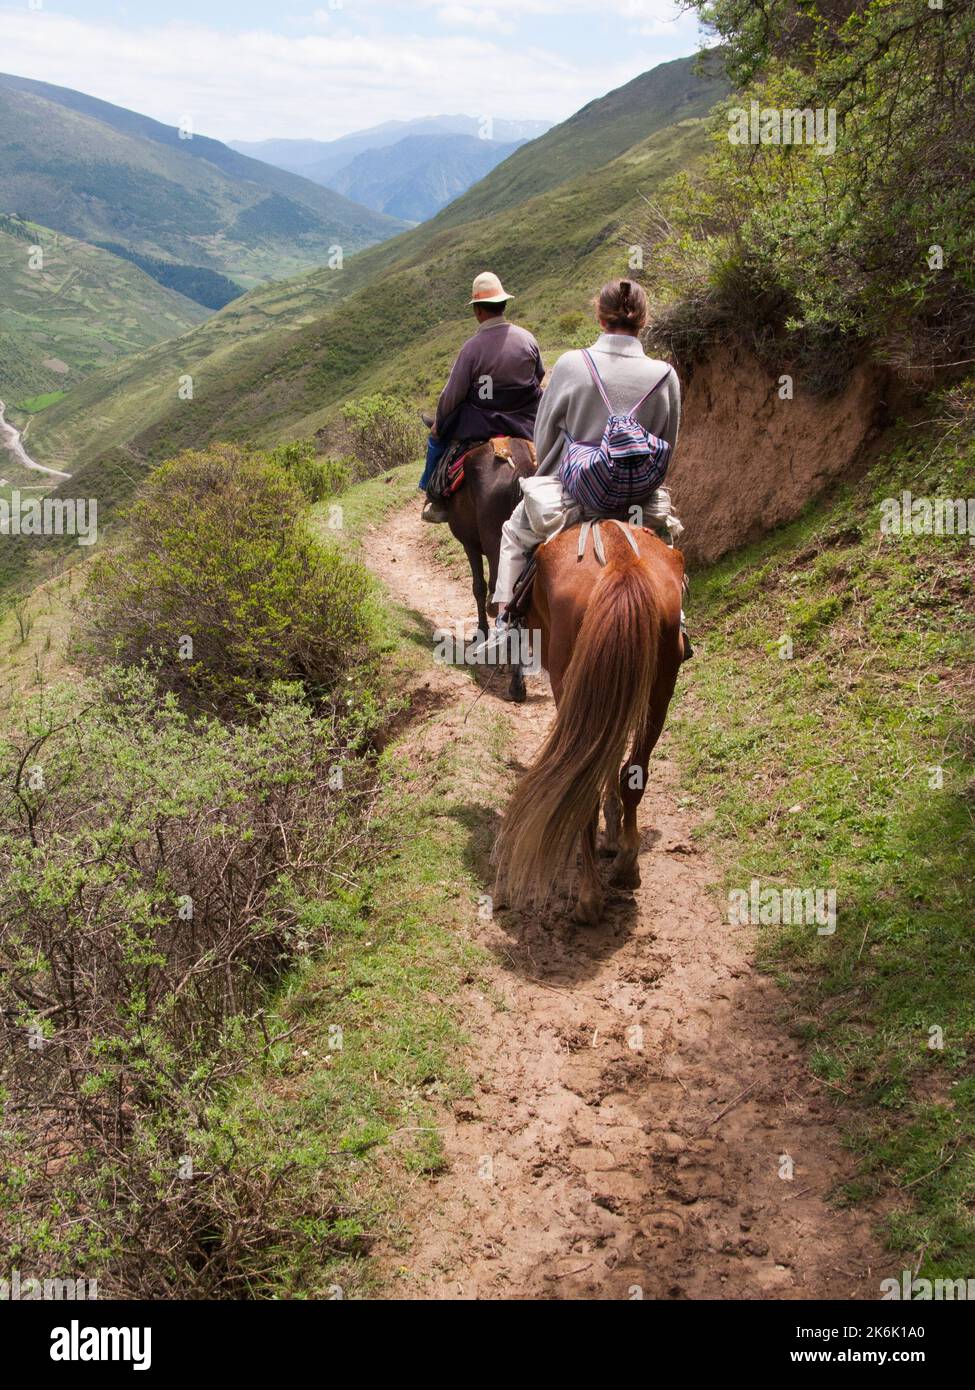 Paseos a caballo paseo en pony para el occidental y europeo de vacaciones, los turistas y los visitantes dados por el jinete tibetano / hombre / la gente étnica de Tíbet, residentes o locales a la antigua ciudad amurallada china de Songpan en el norte de la provincia de Sichuan, China. (126) Foto de stock